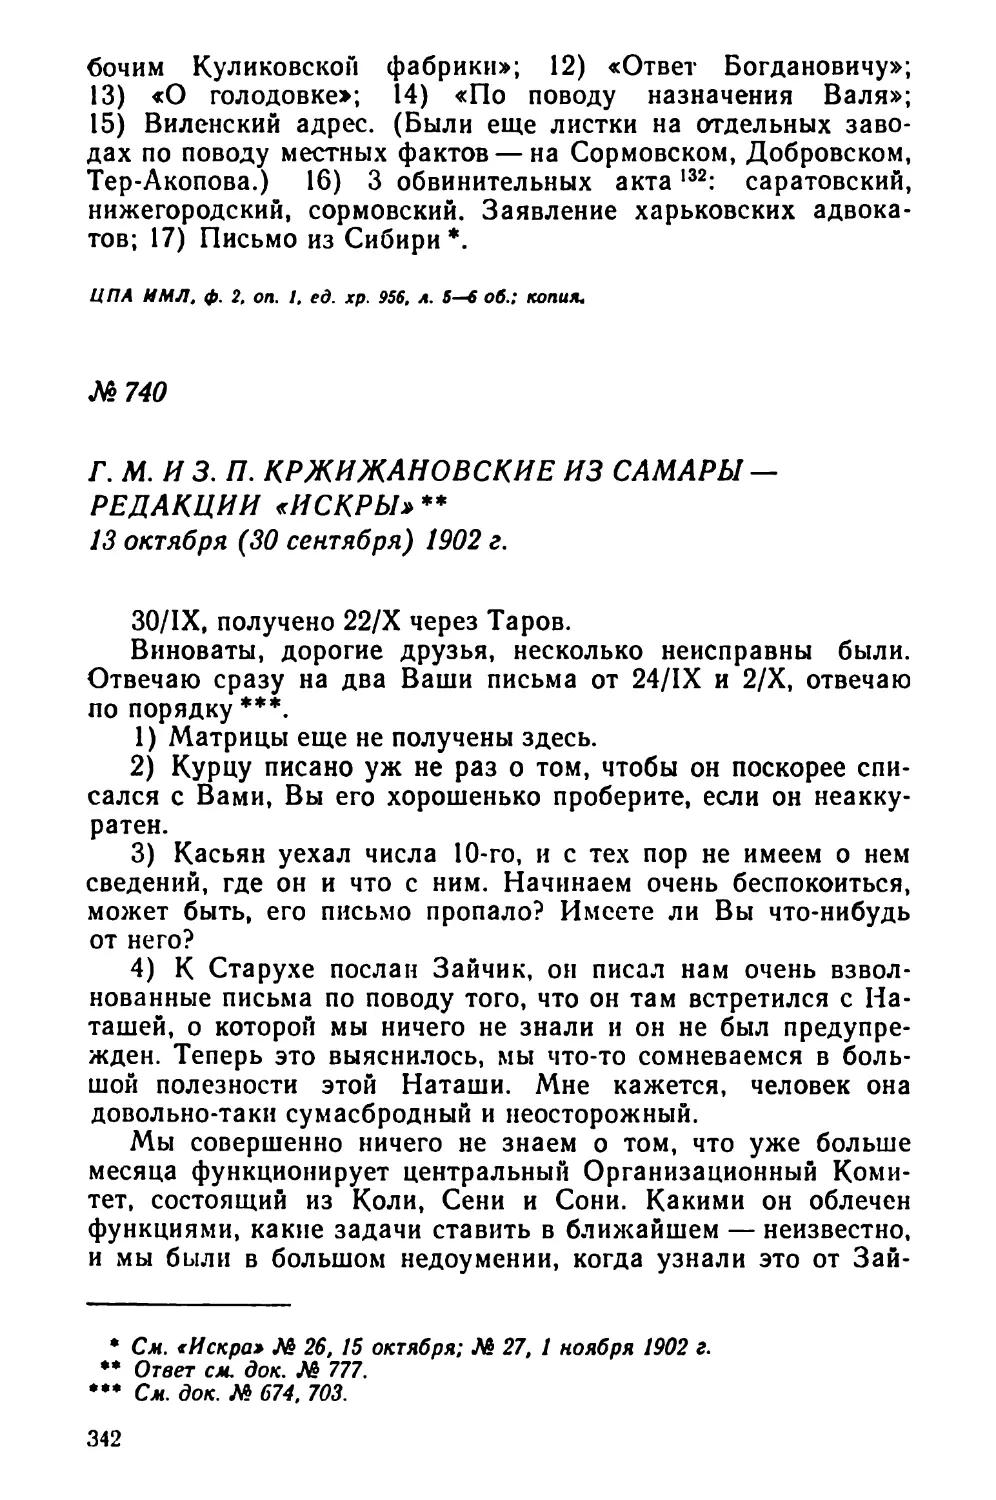 № 740 Г. М. и 3. П. Кржижановские из Самары — редакции «Искры». 13 октября